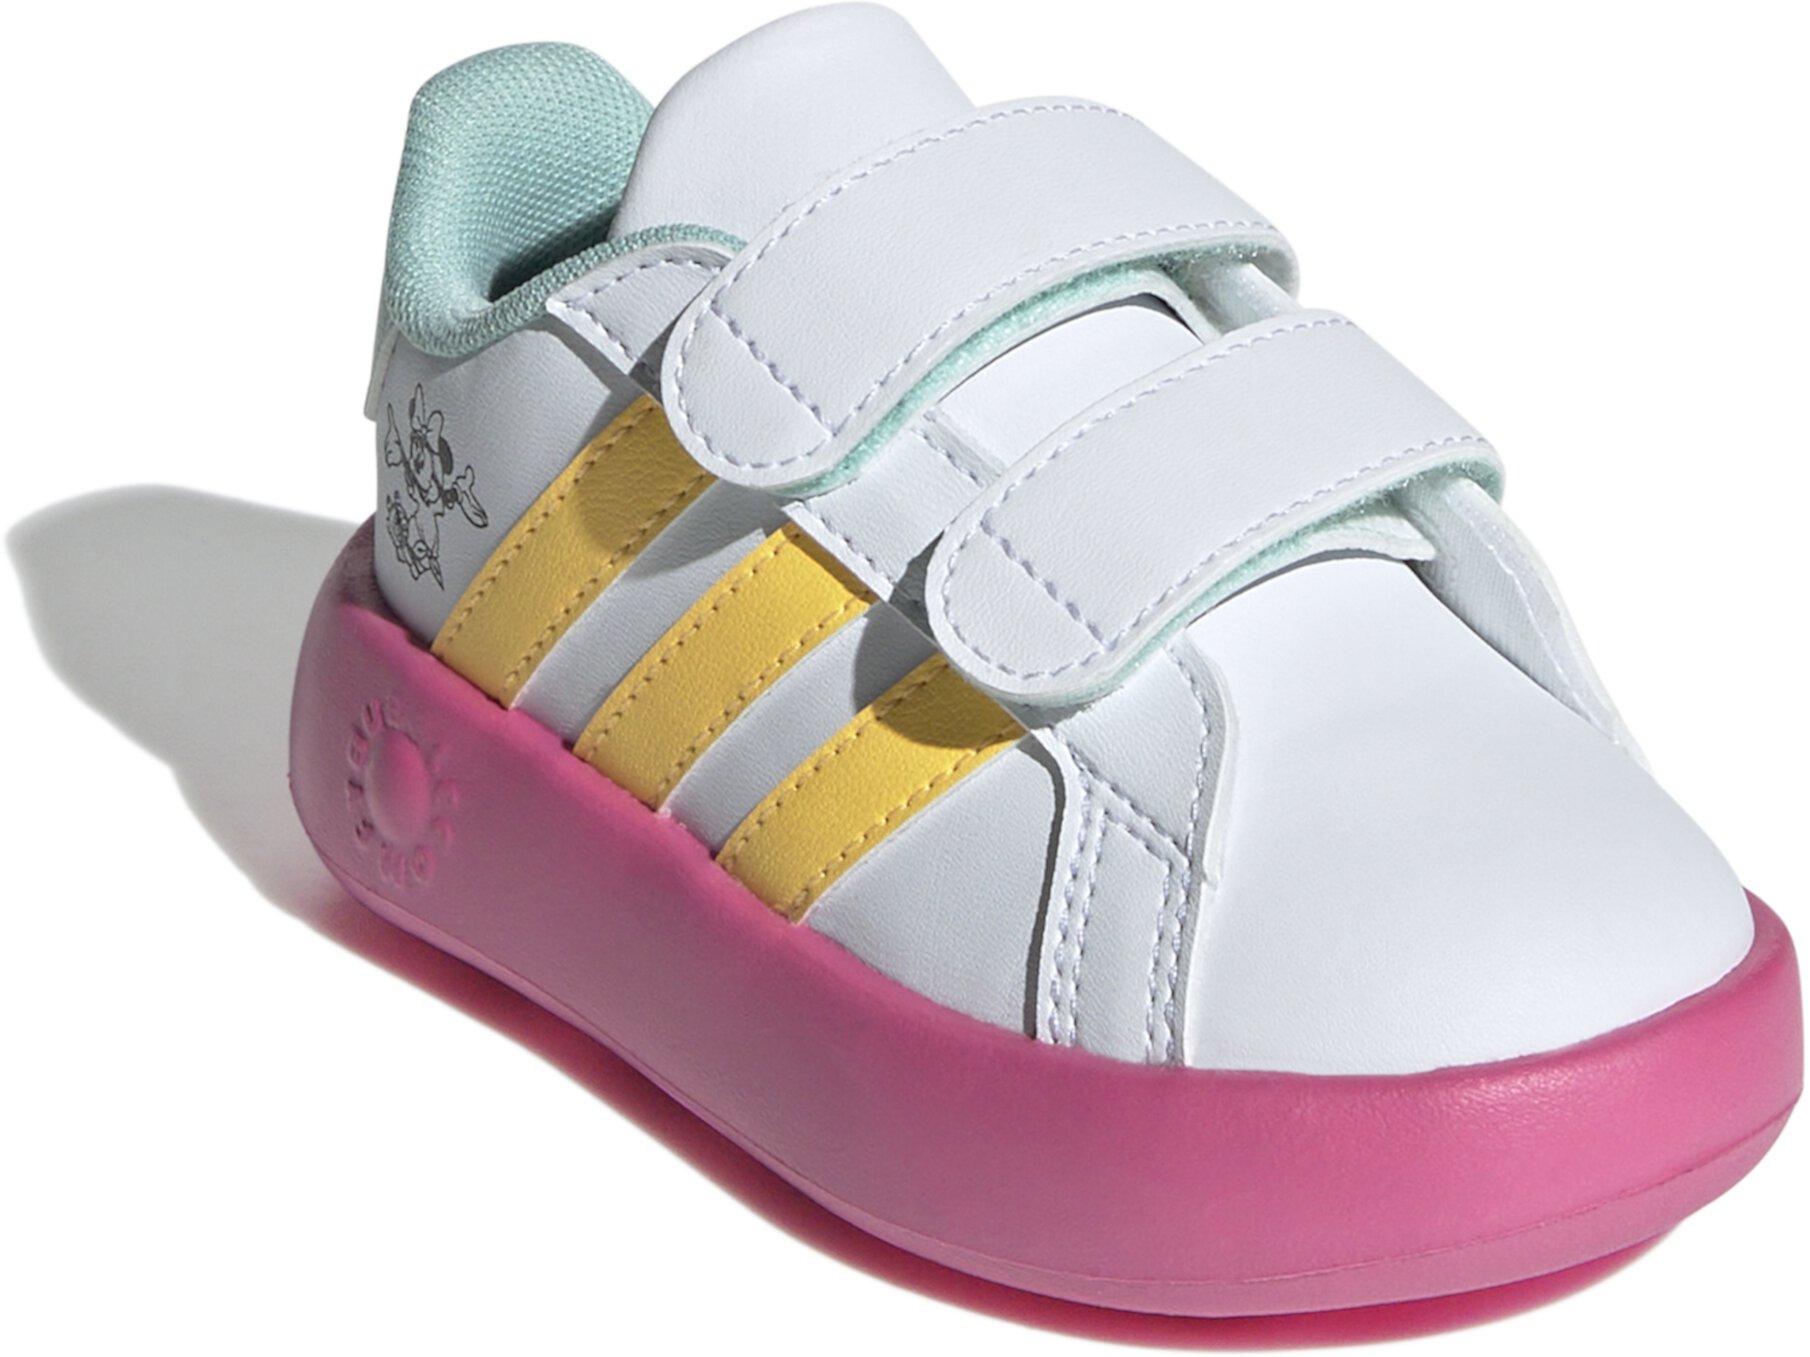 Гранд Корт x Минни Маус (Малыш) Adidas